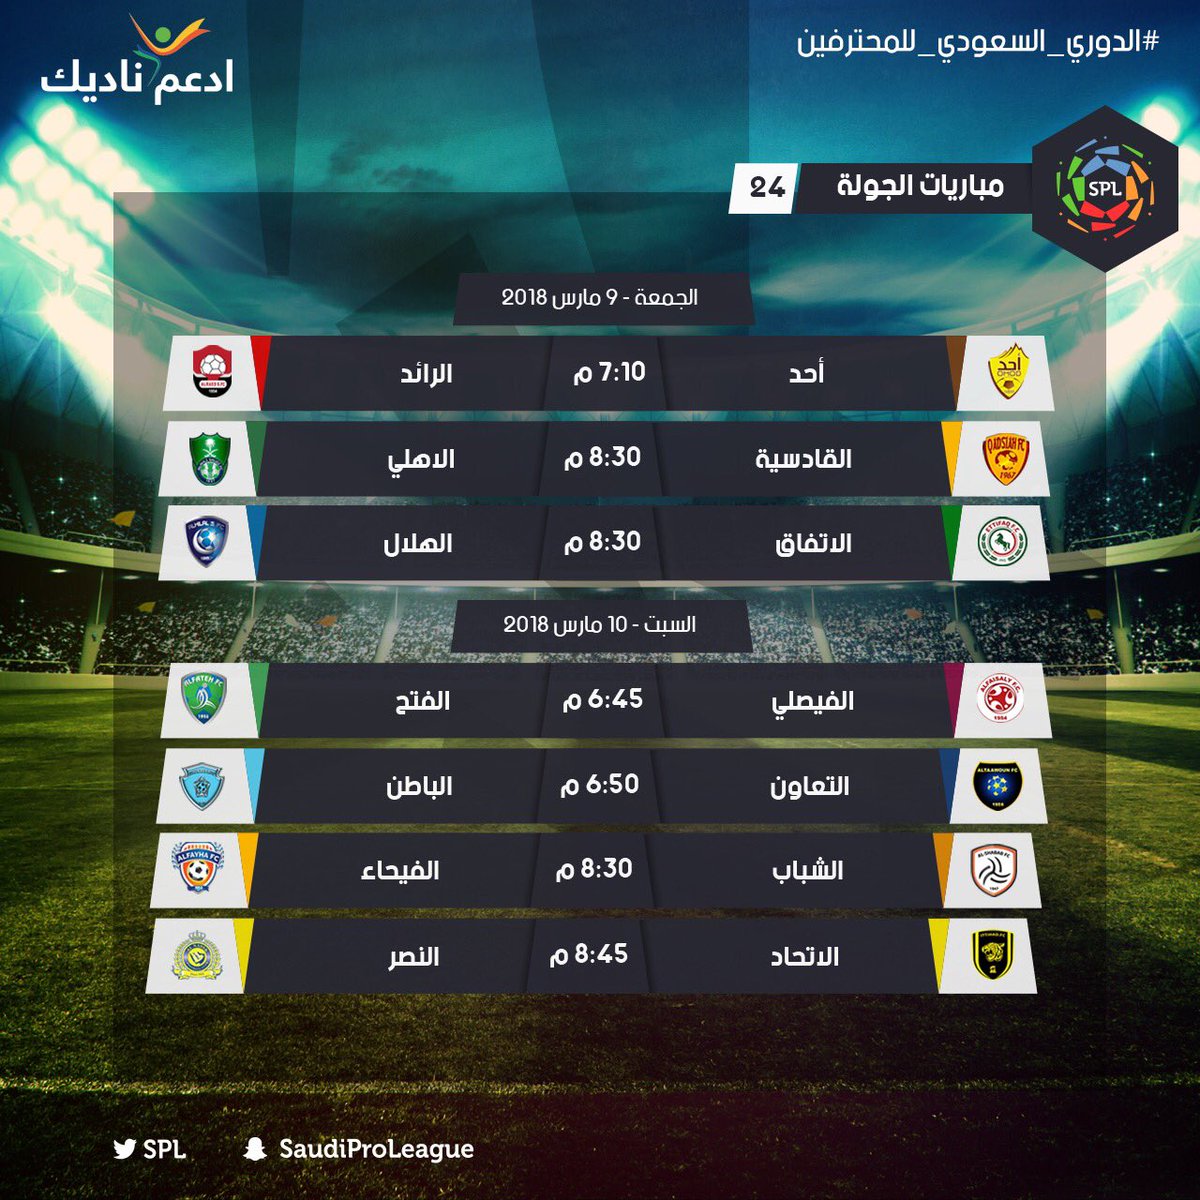 مباراة امس الدوري السعودي